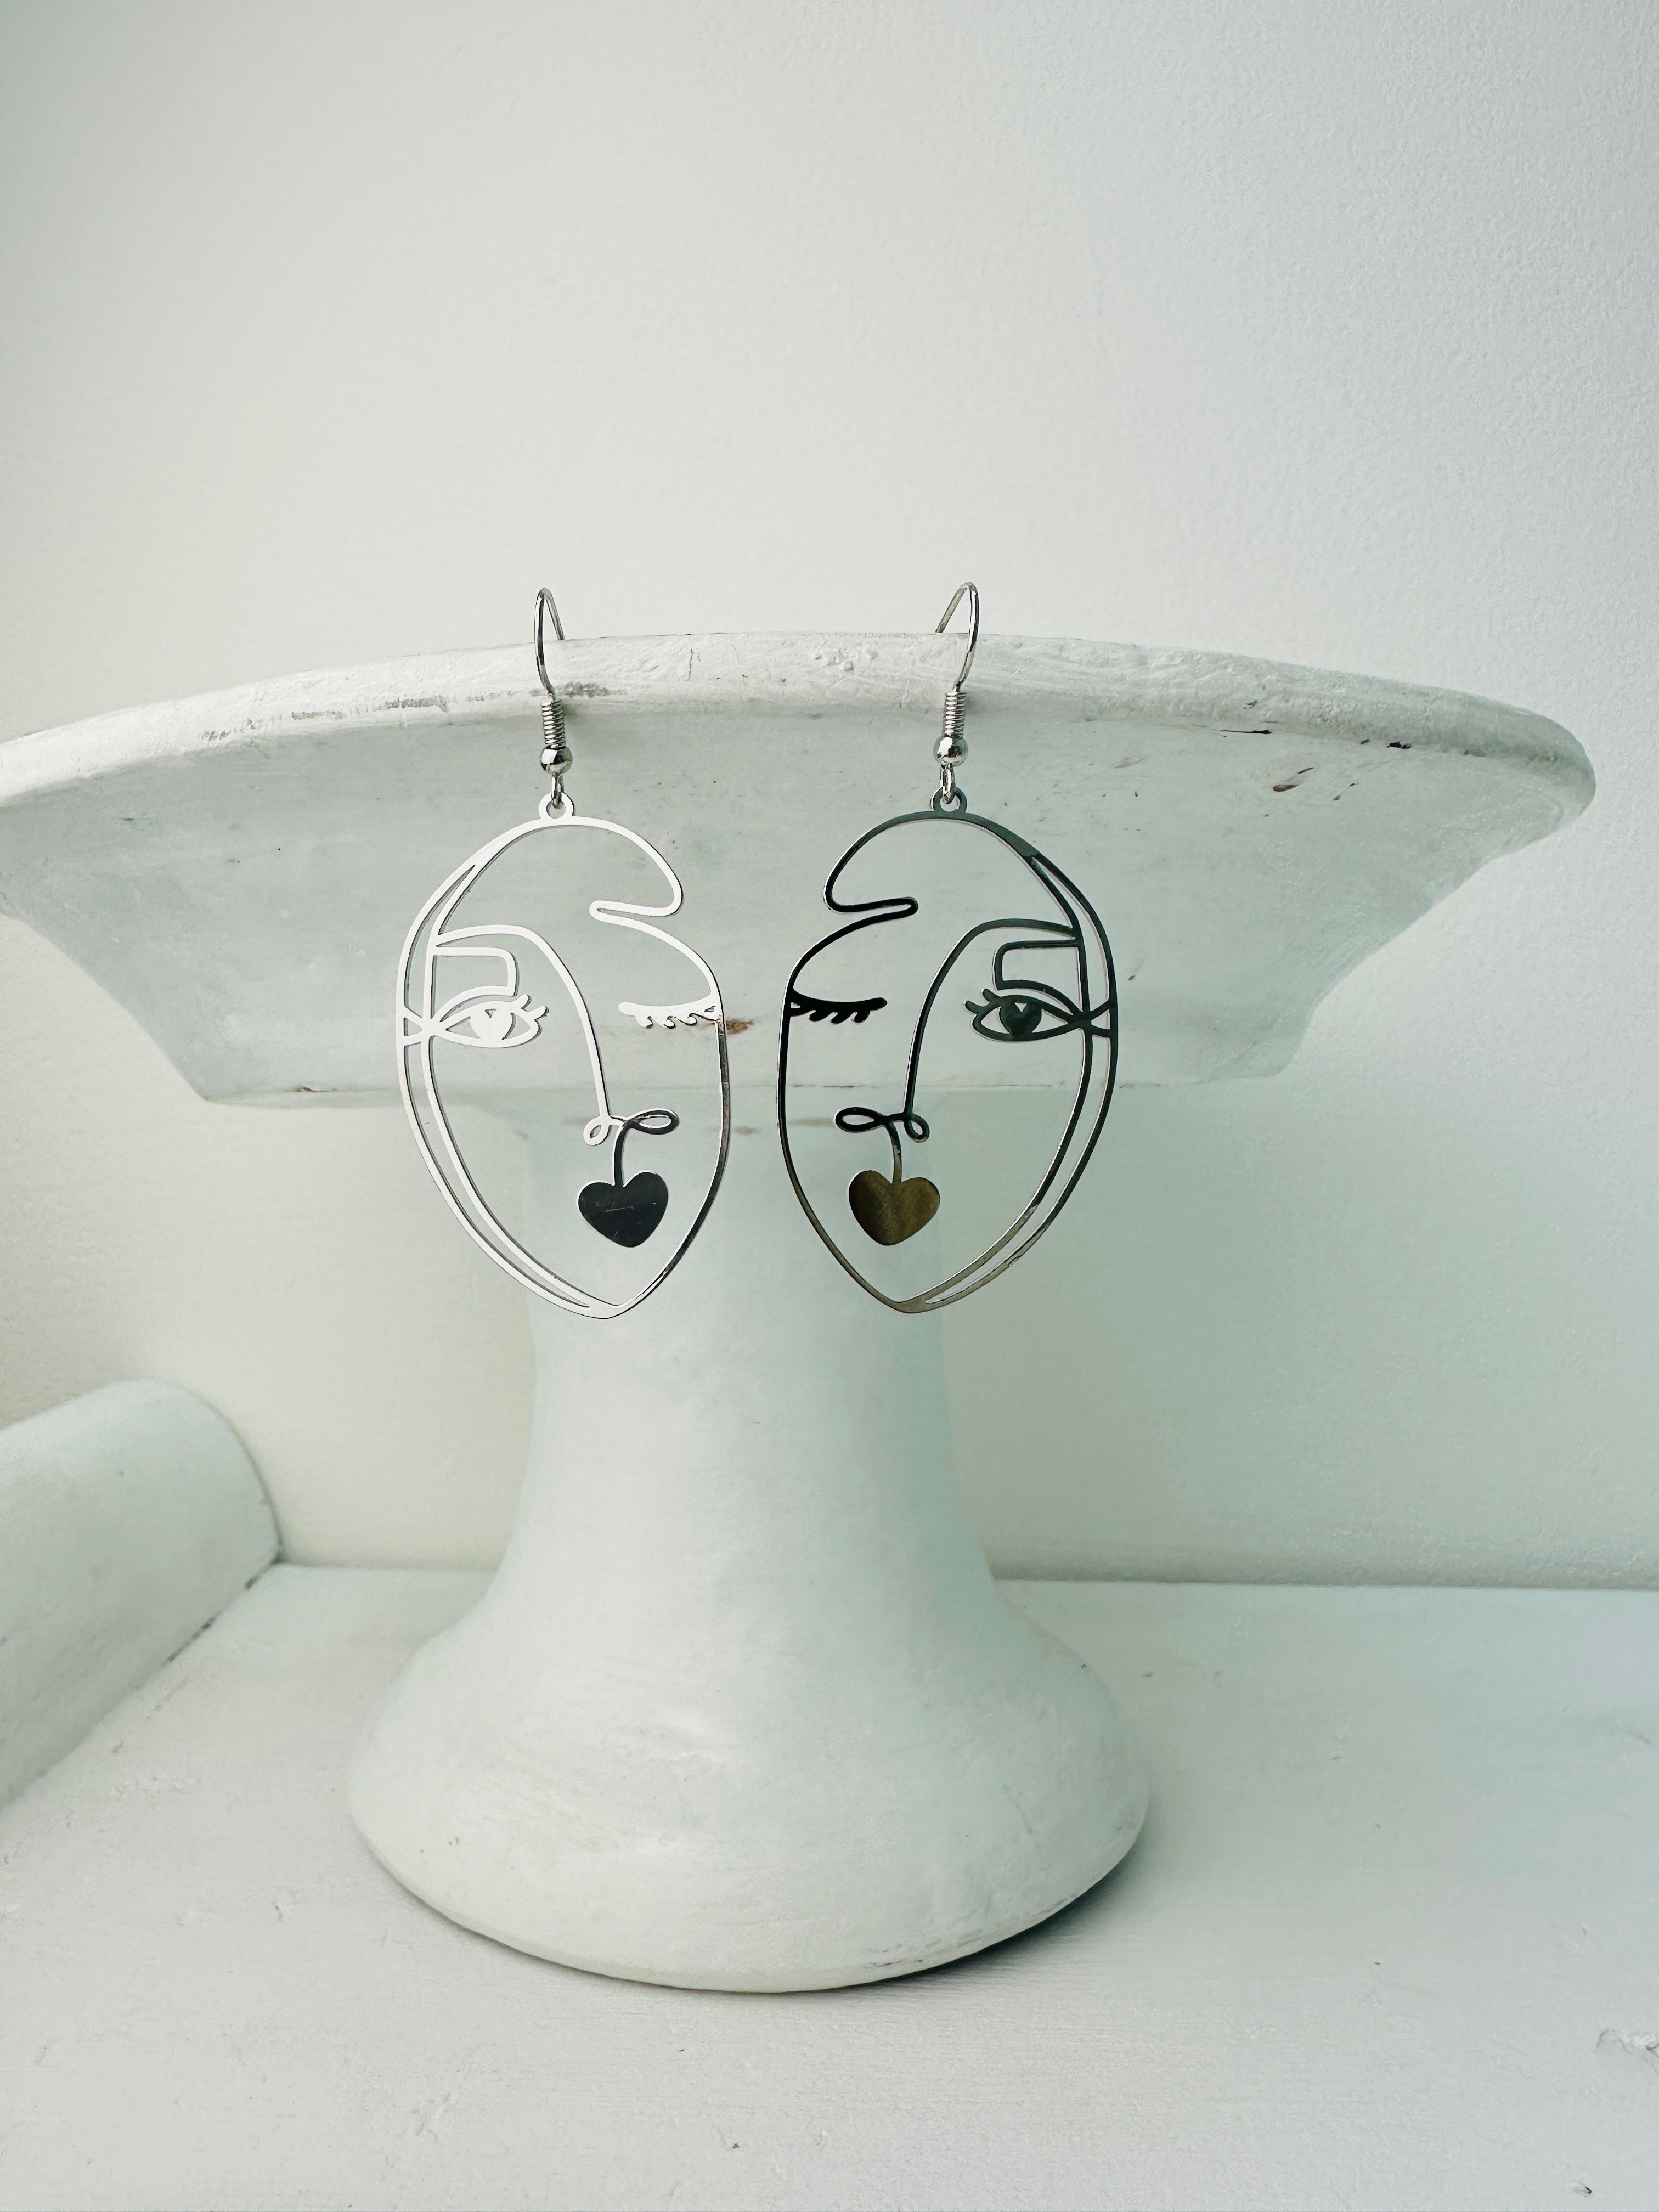 display view of earrings